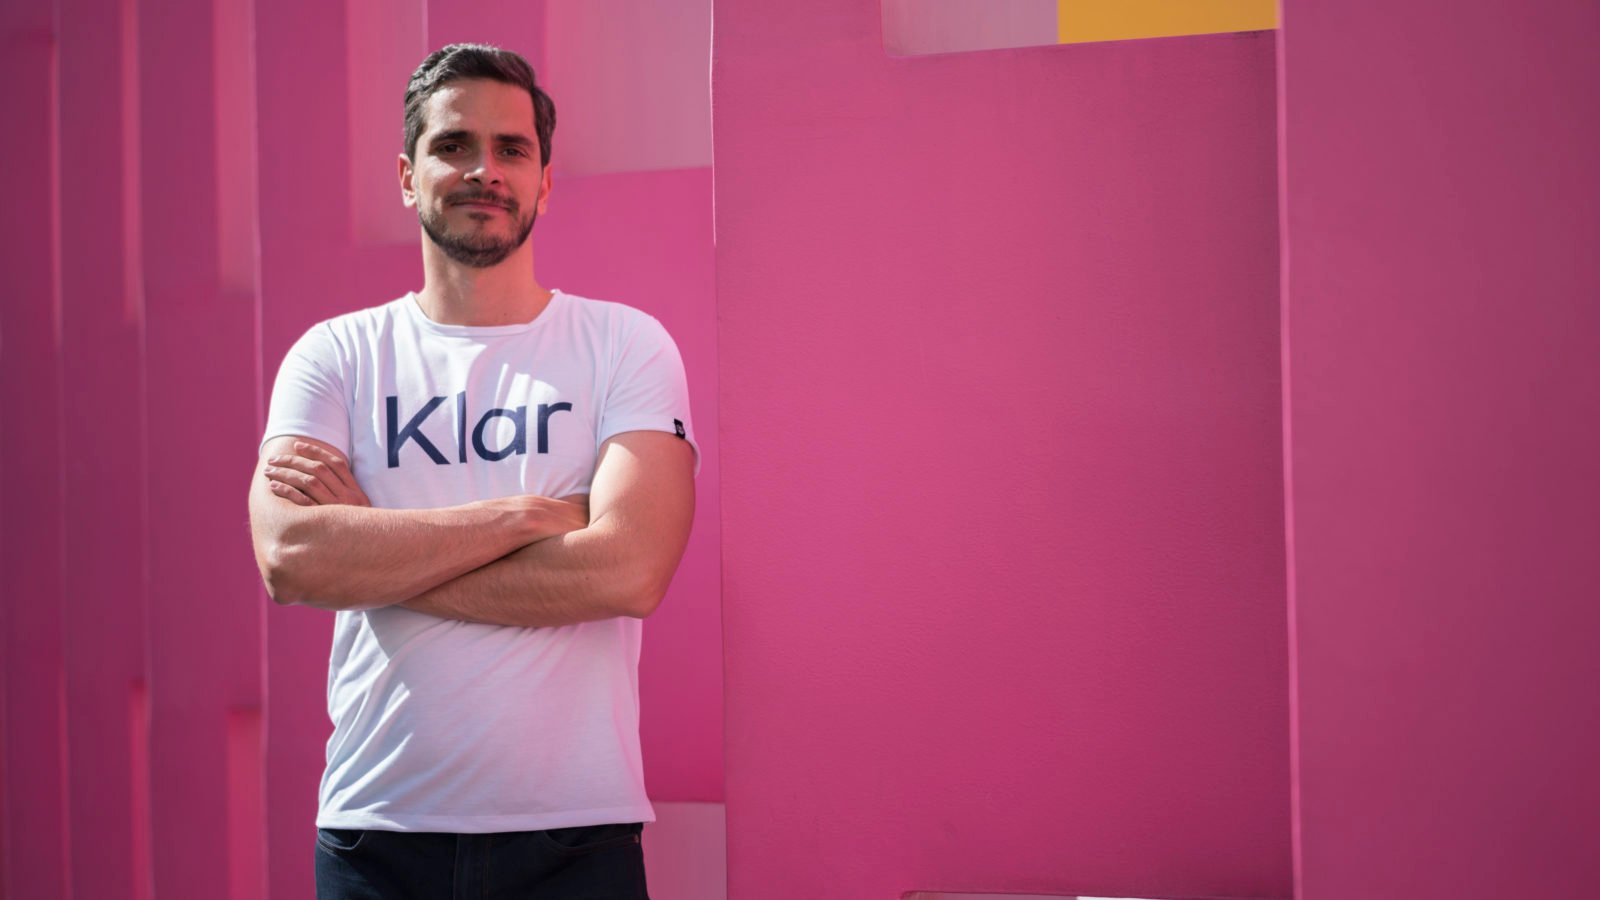 ‘Las startups paranoicas son las que sobreviven’, dice Klar ante incertidumbre global